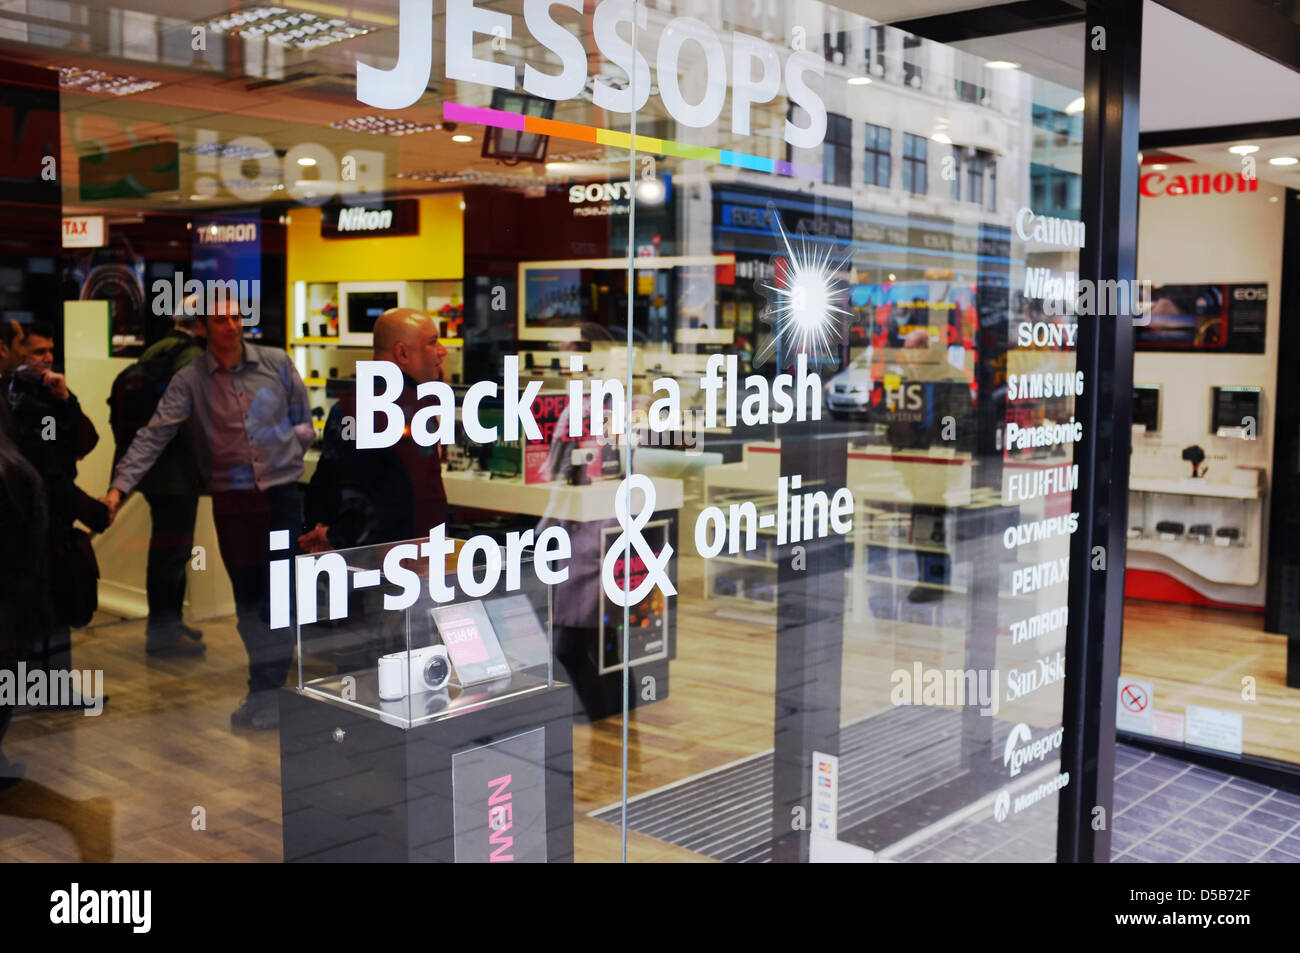 Londres, Royaume-Uni. 28 mars 2013. Jessops relancée en magasin photographique Oxford Street, London UK. Crédit : John Bowling / Alamy Live News Banque D'Images